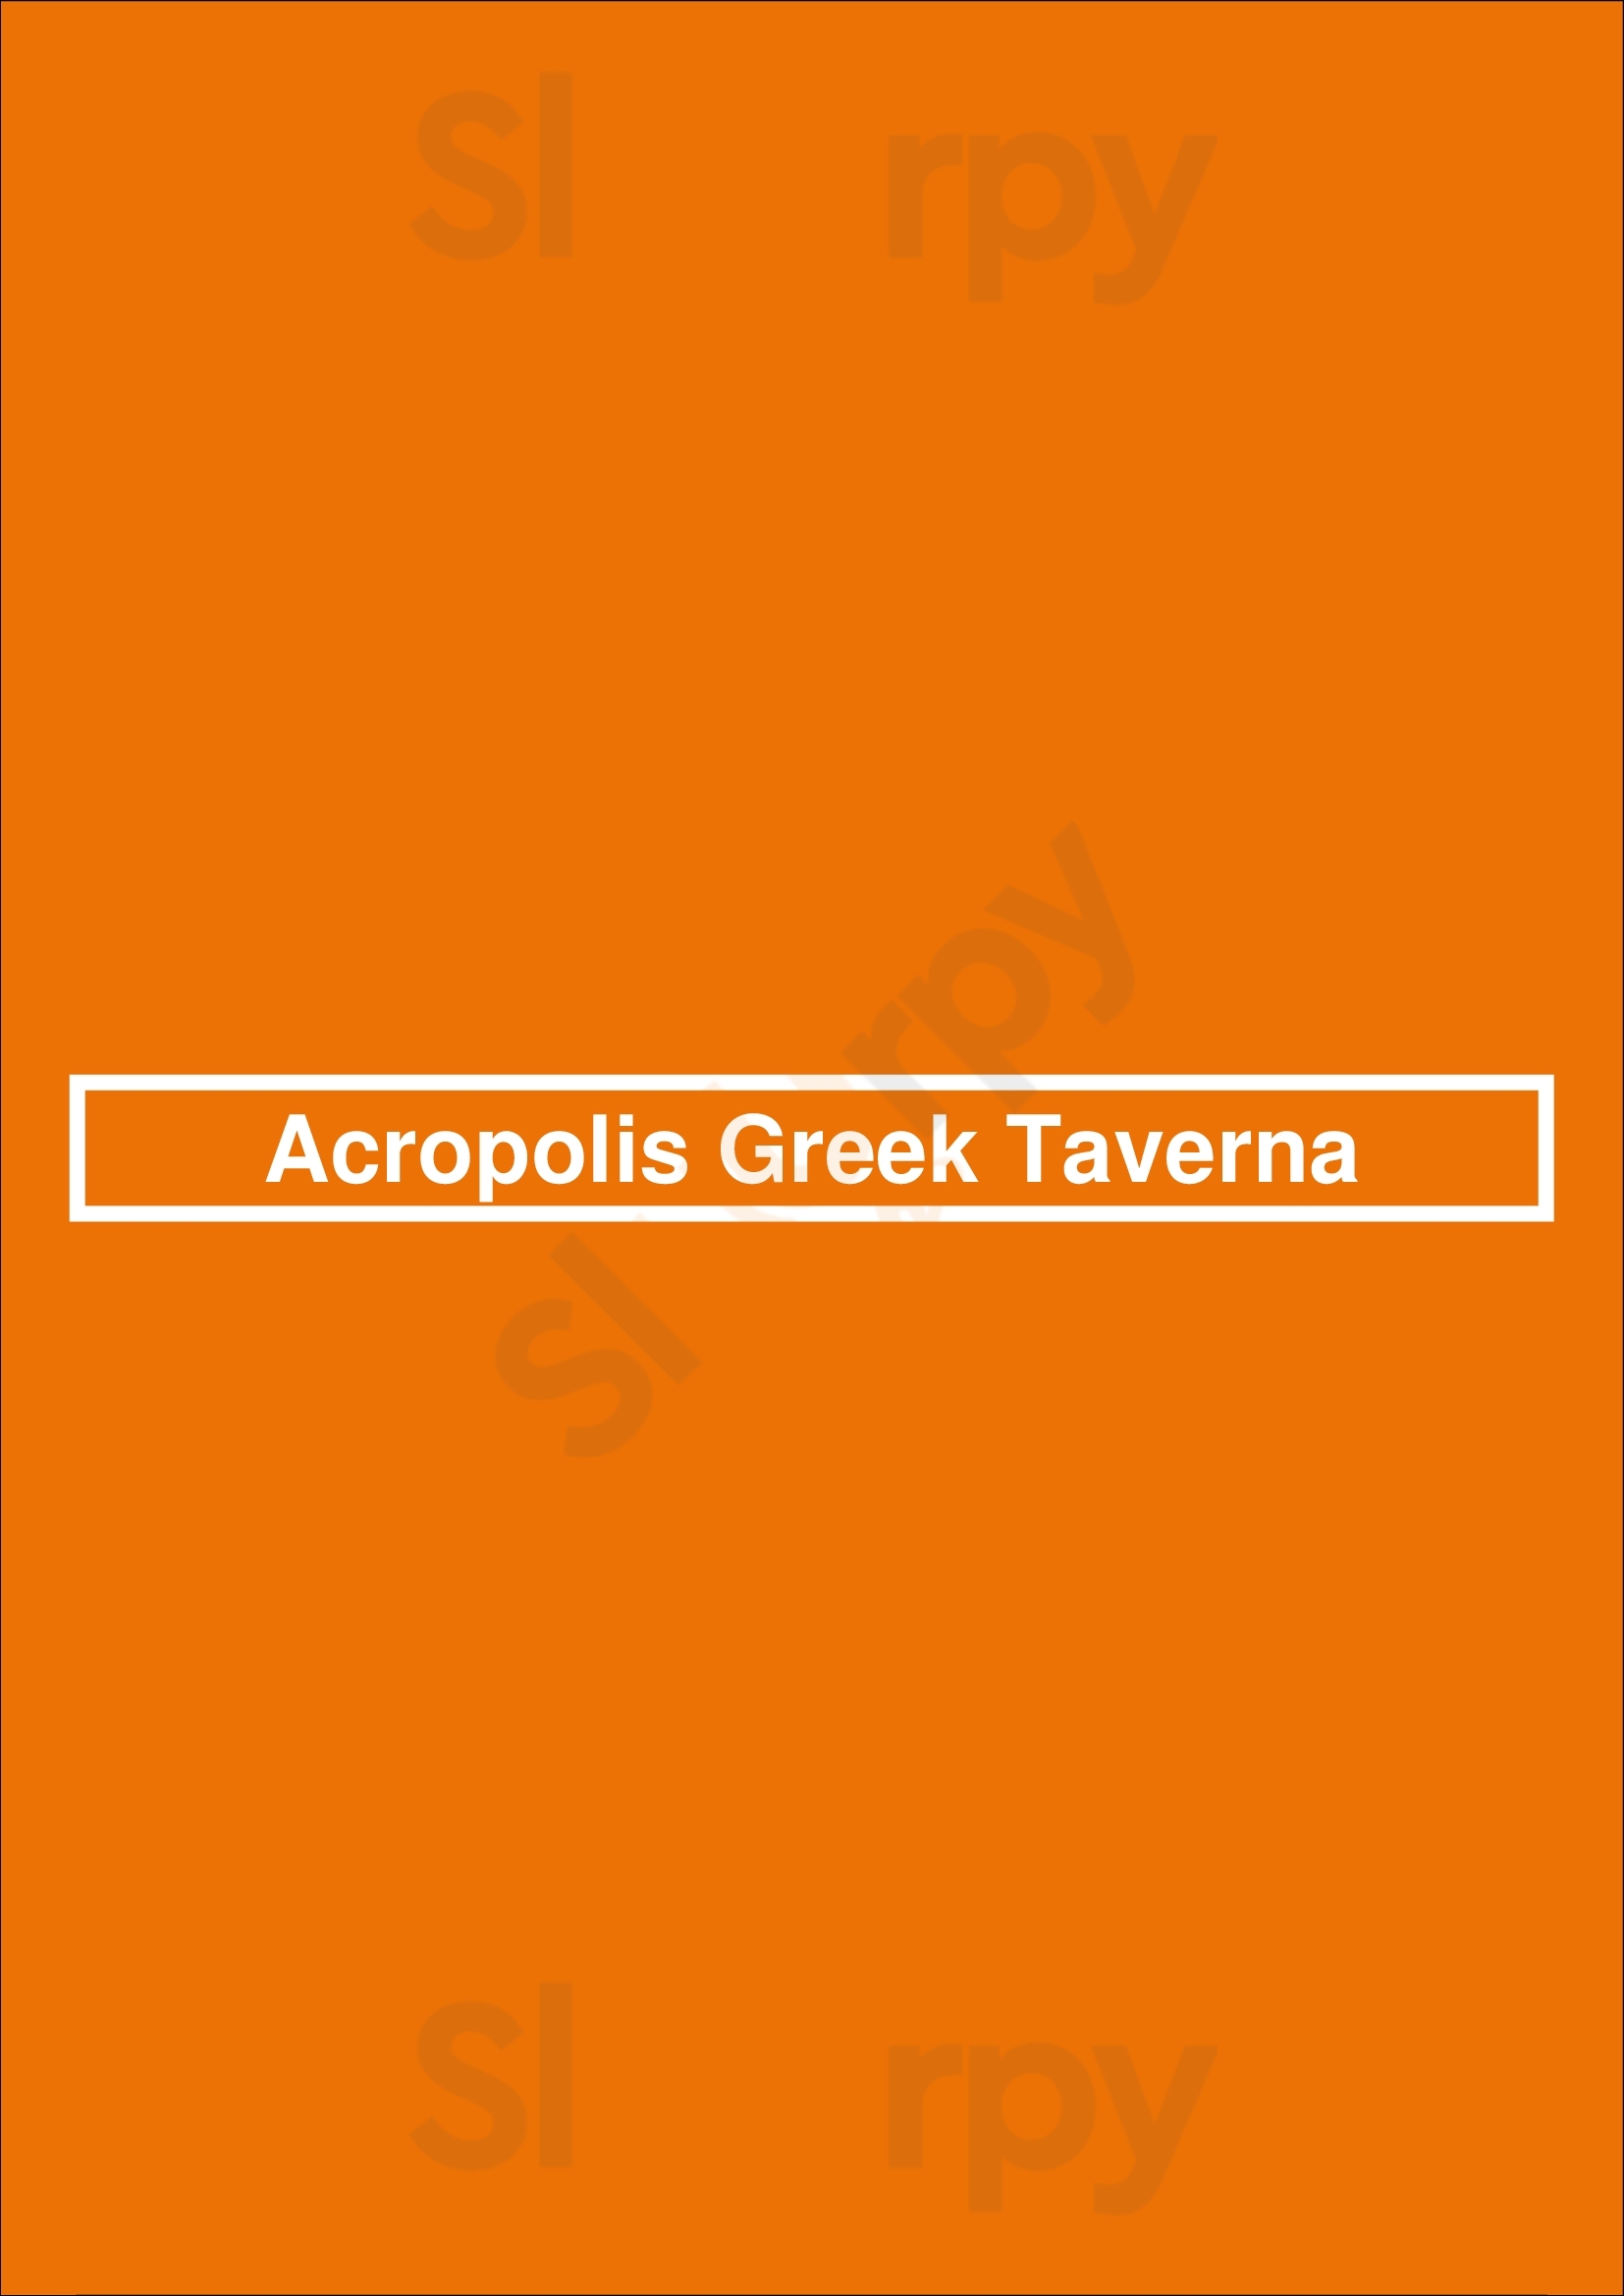 Acropolis Greek Taverna Tampa Menu - 1